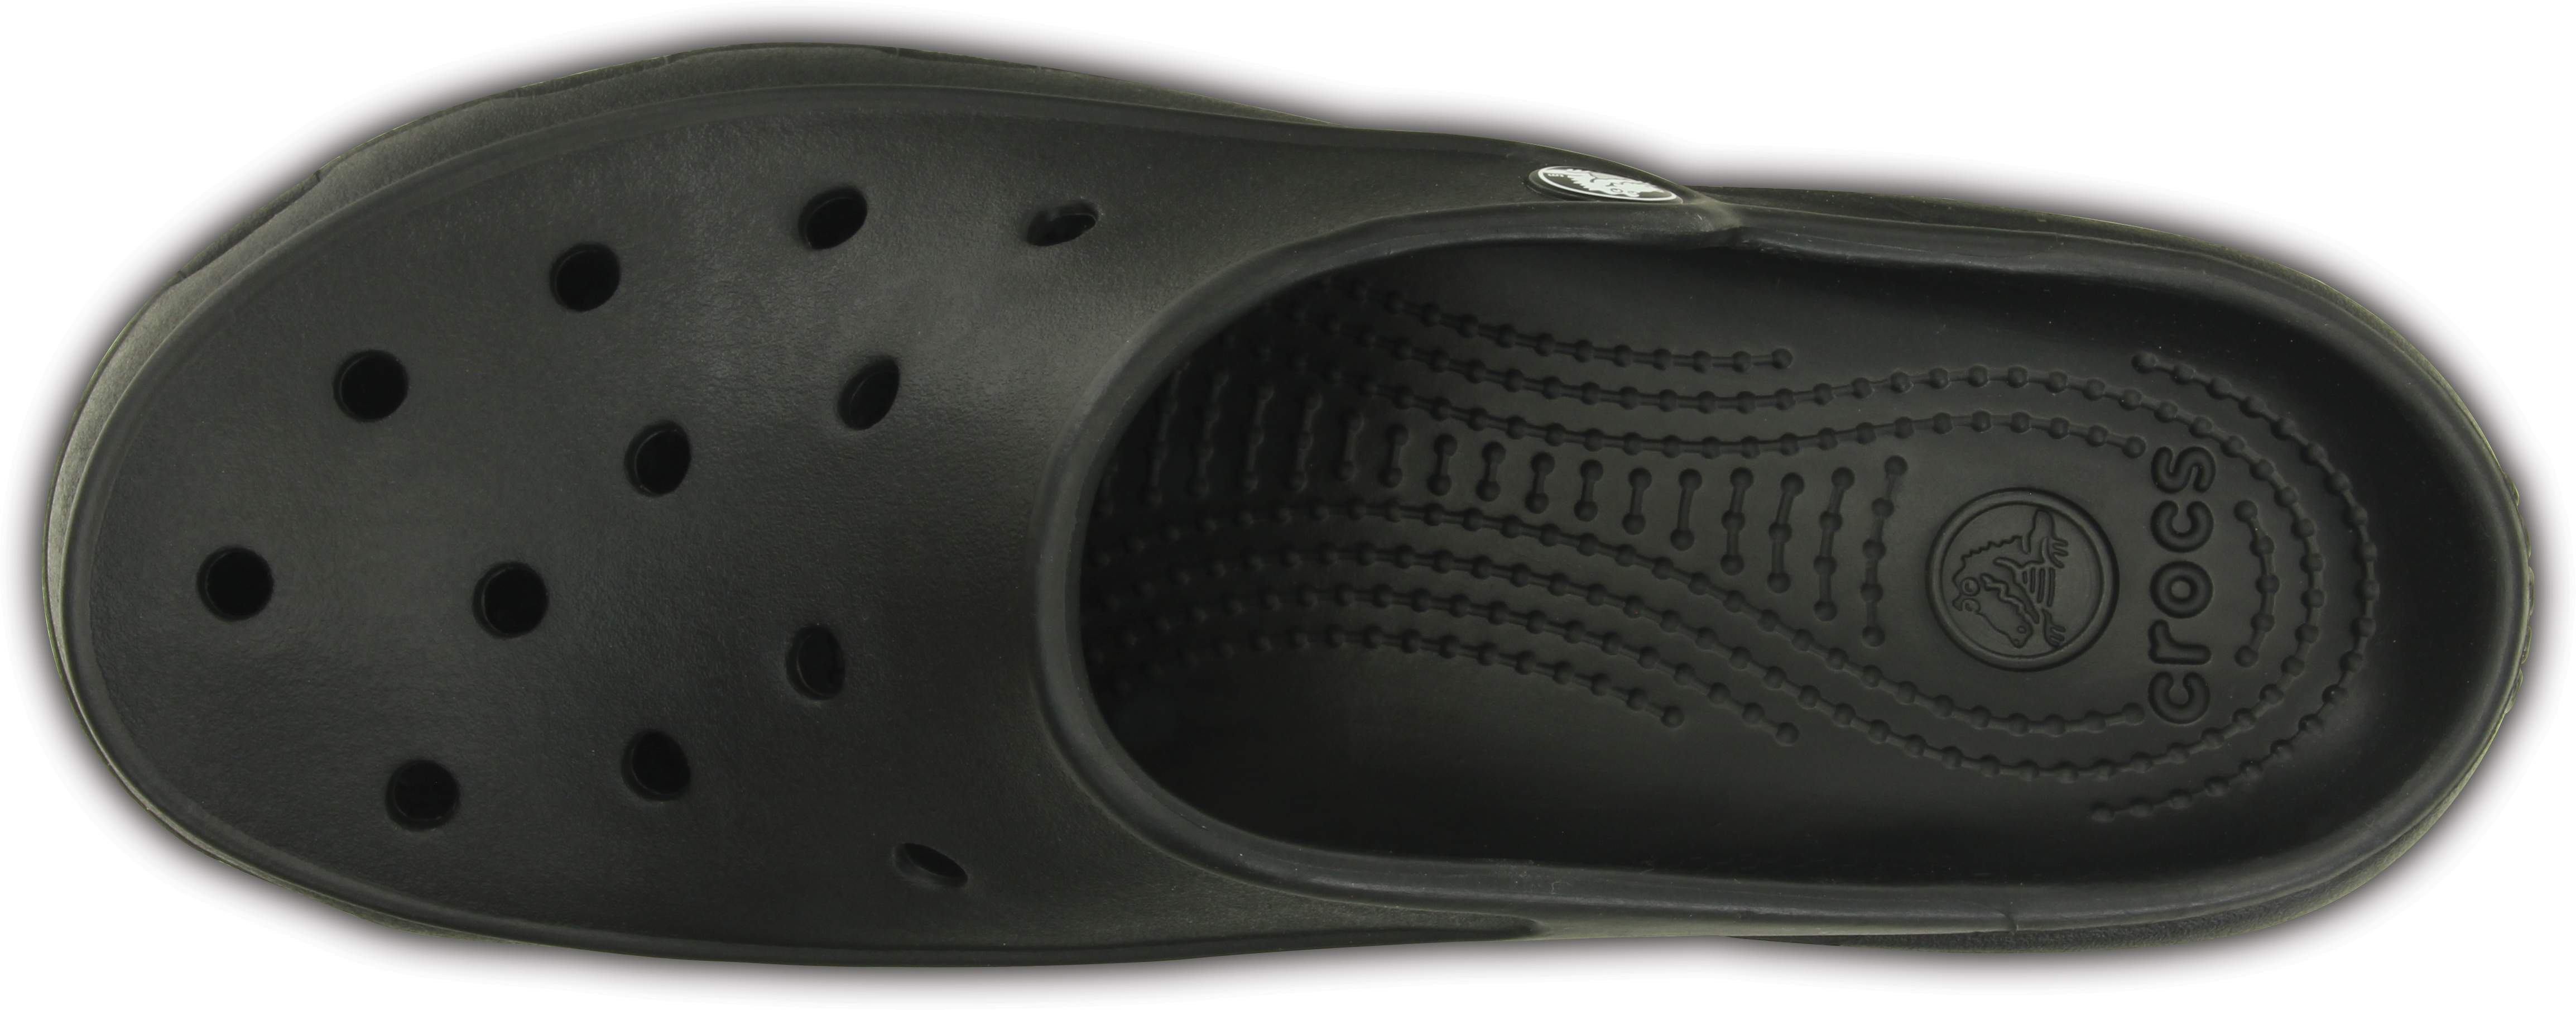 crocs freesail size 8